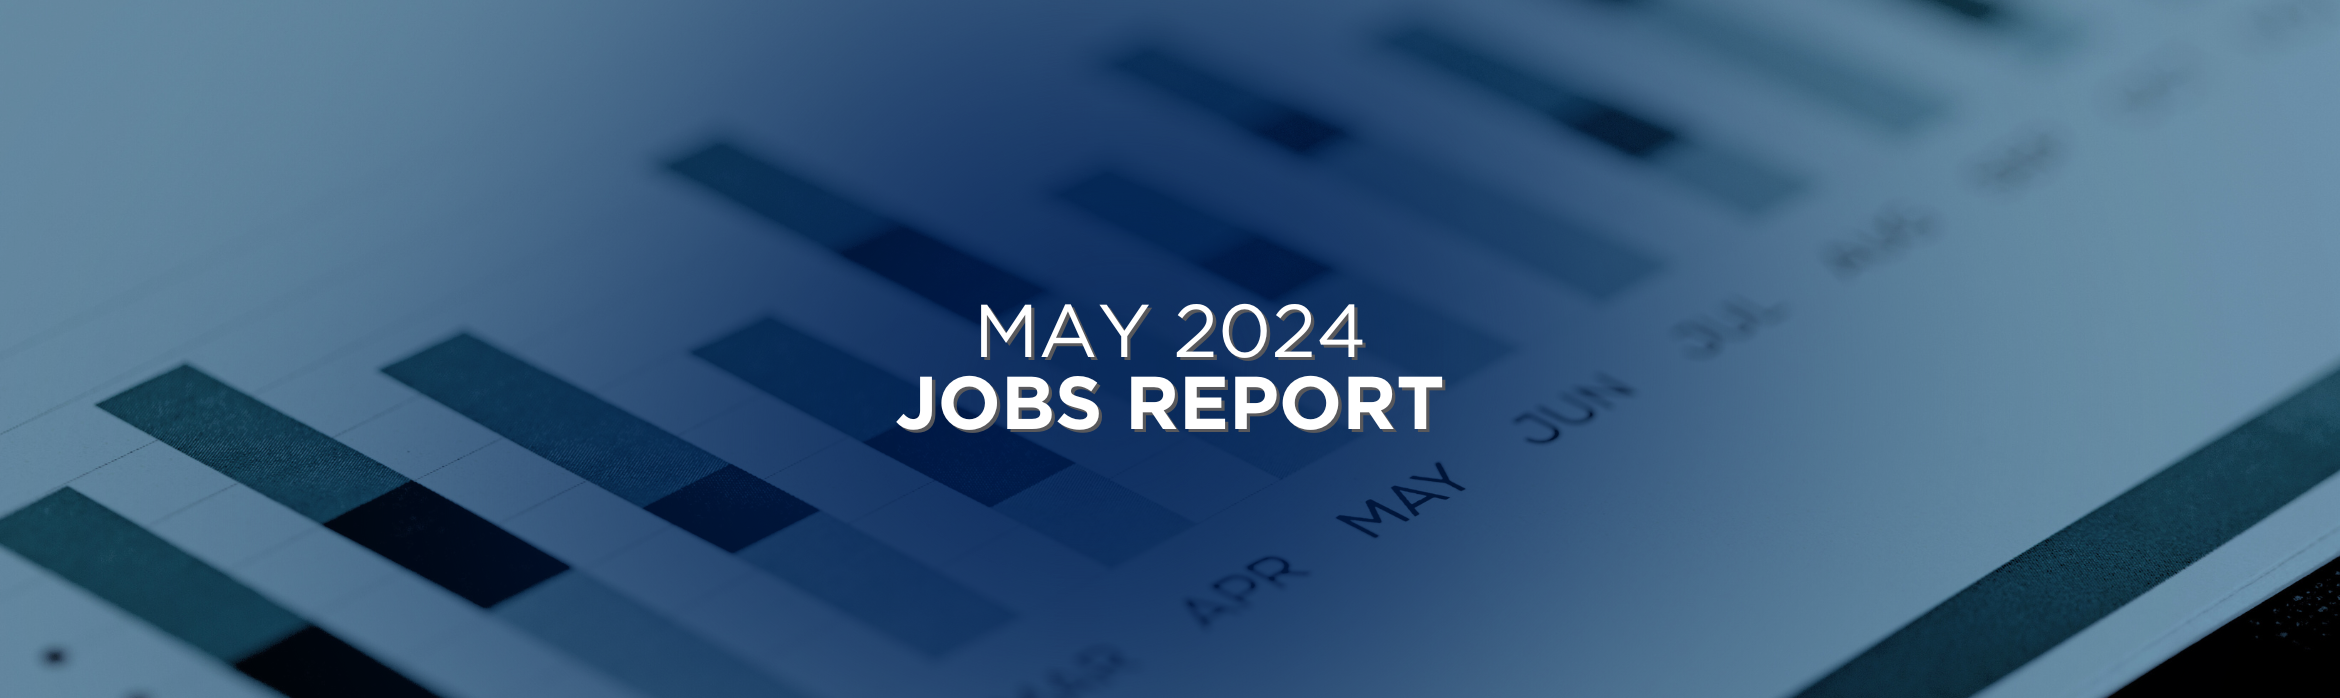 May 2024 Jobs Report Recap